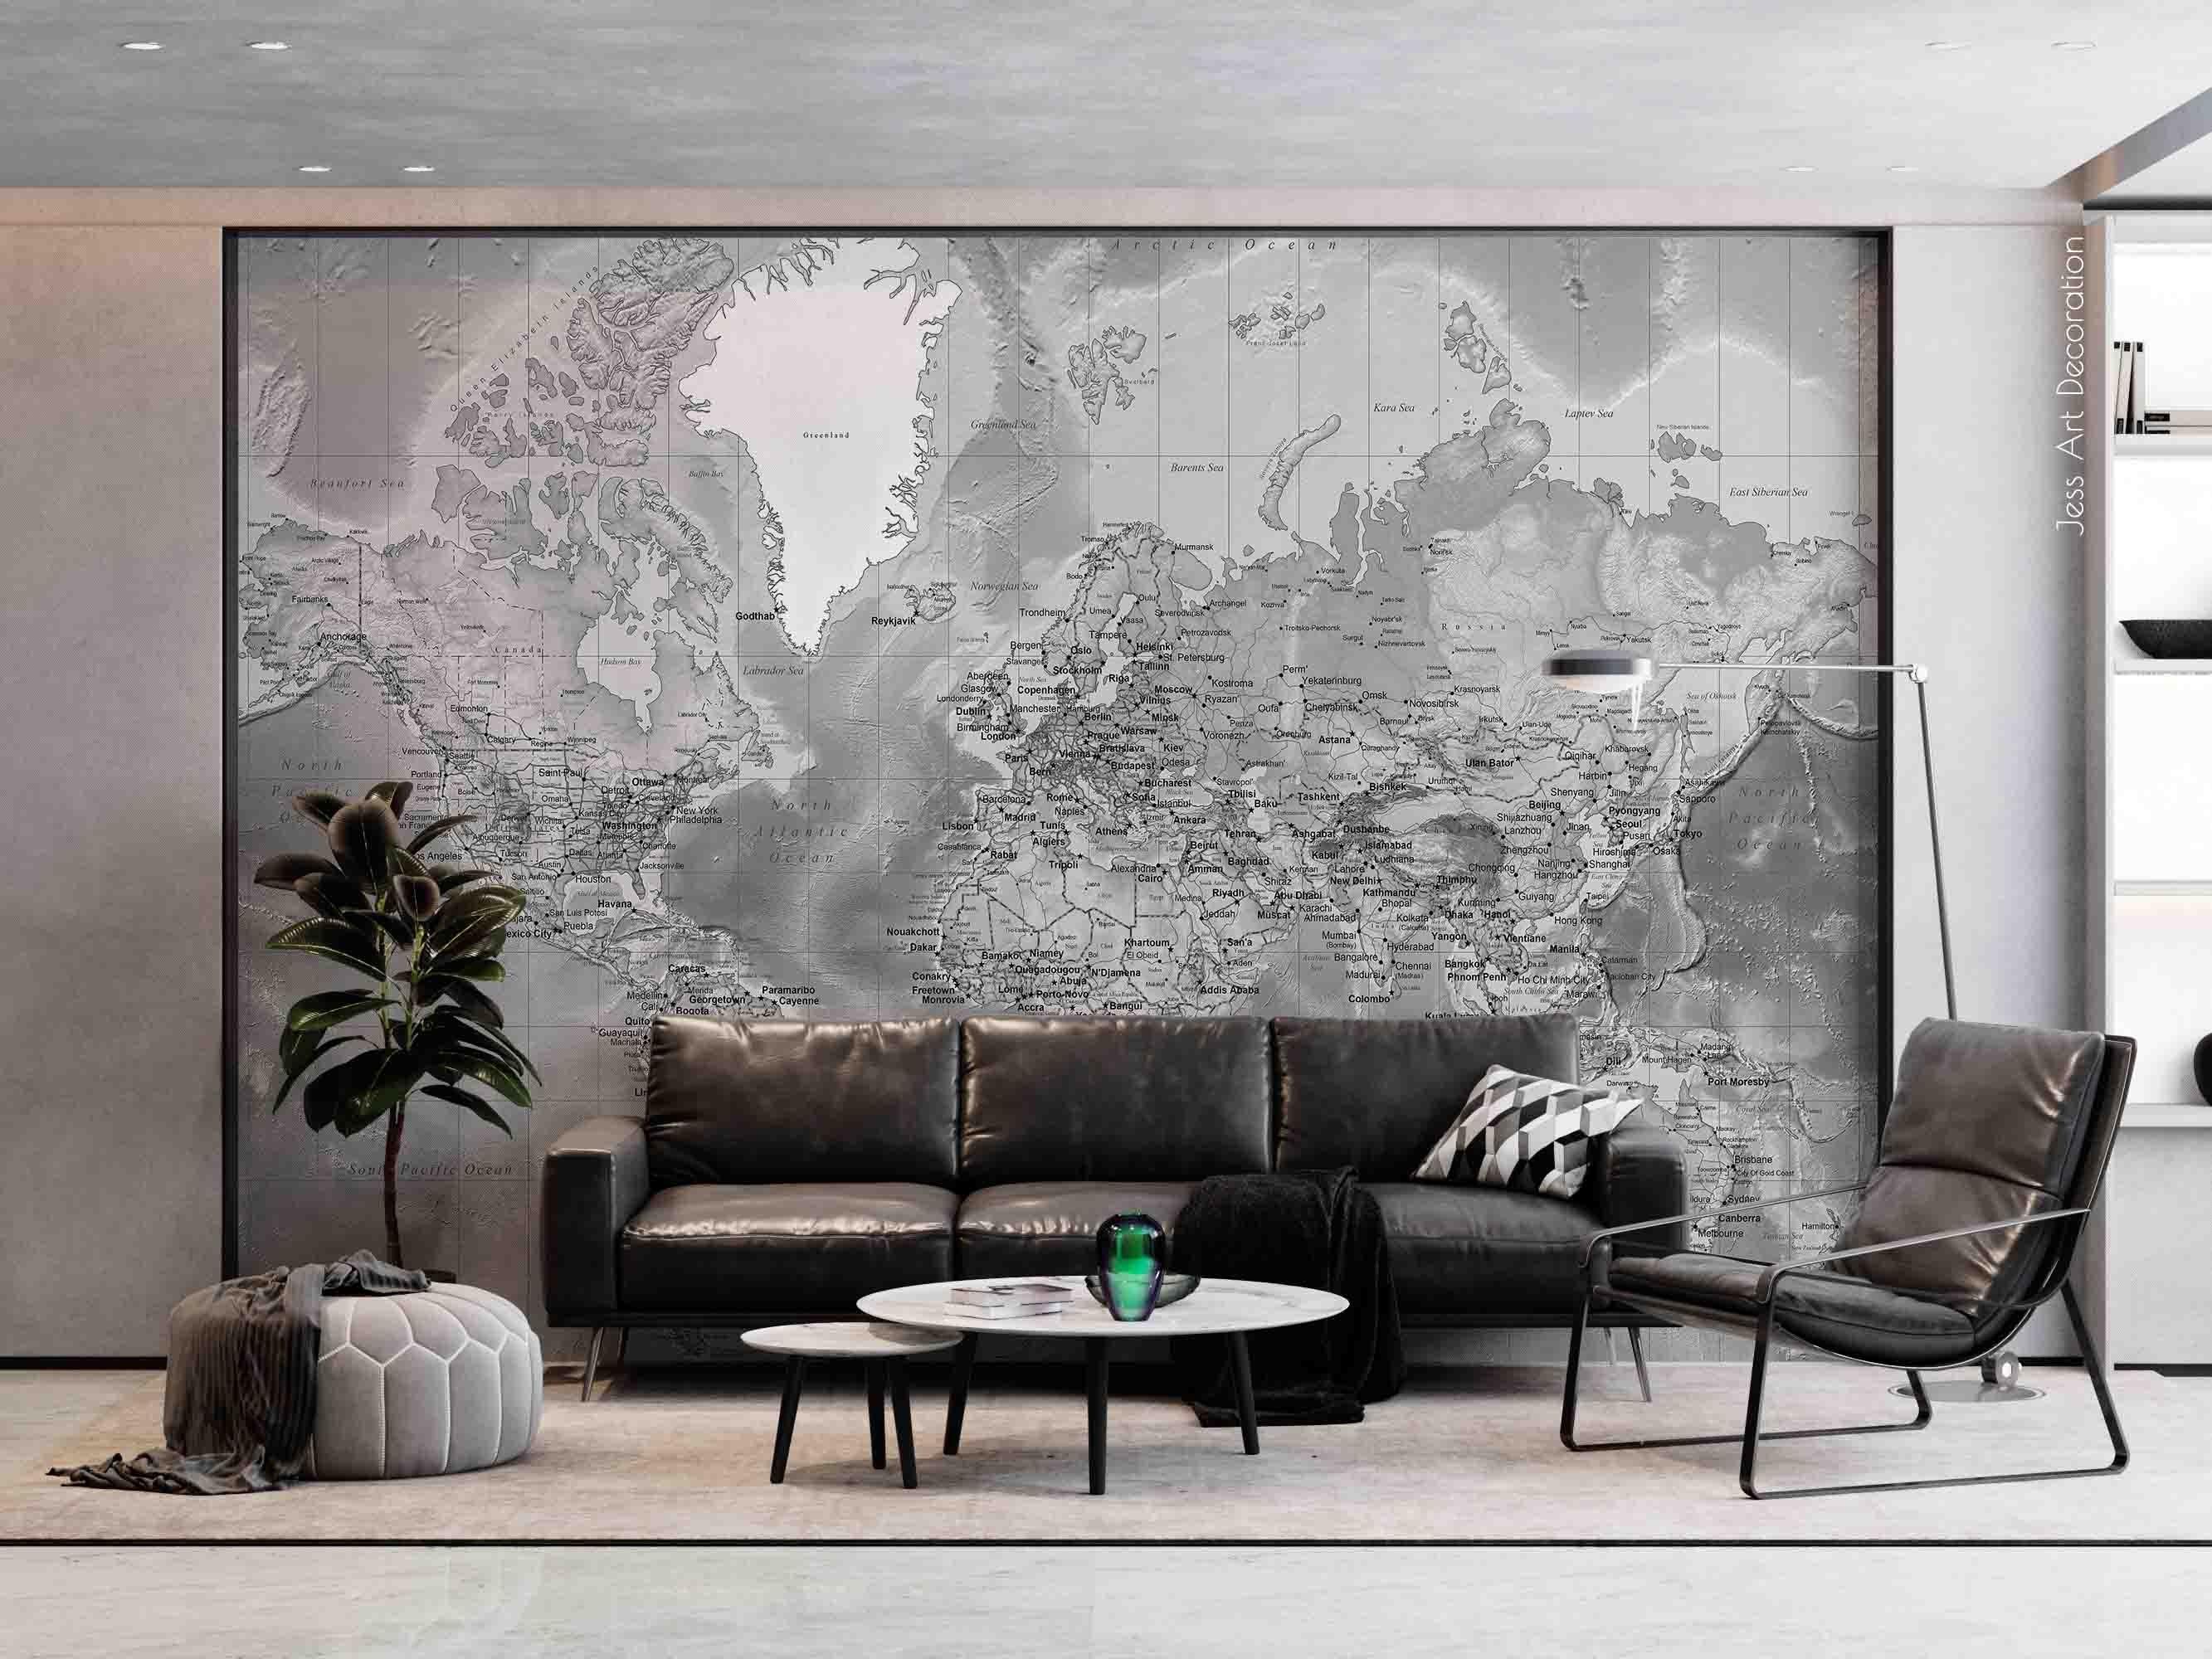 3D World Map Grey Wall Mural Wallpaper GD 3147- Jess Art Decoration